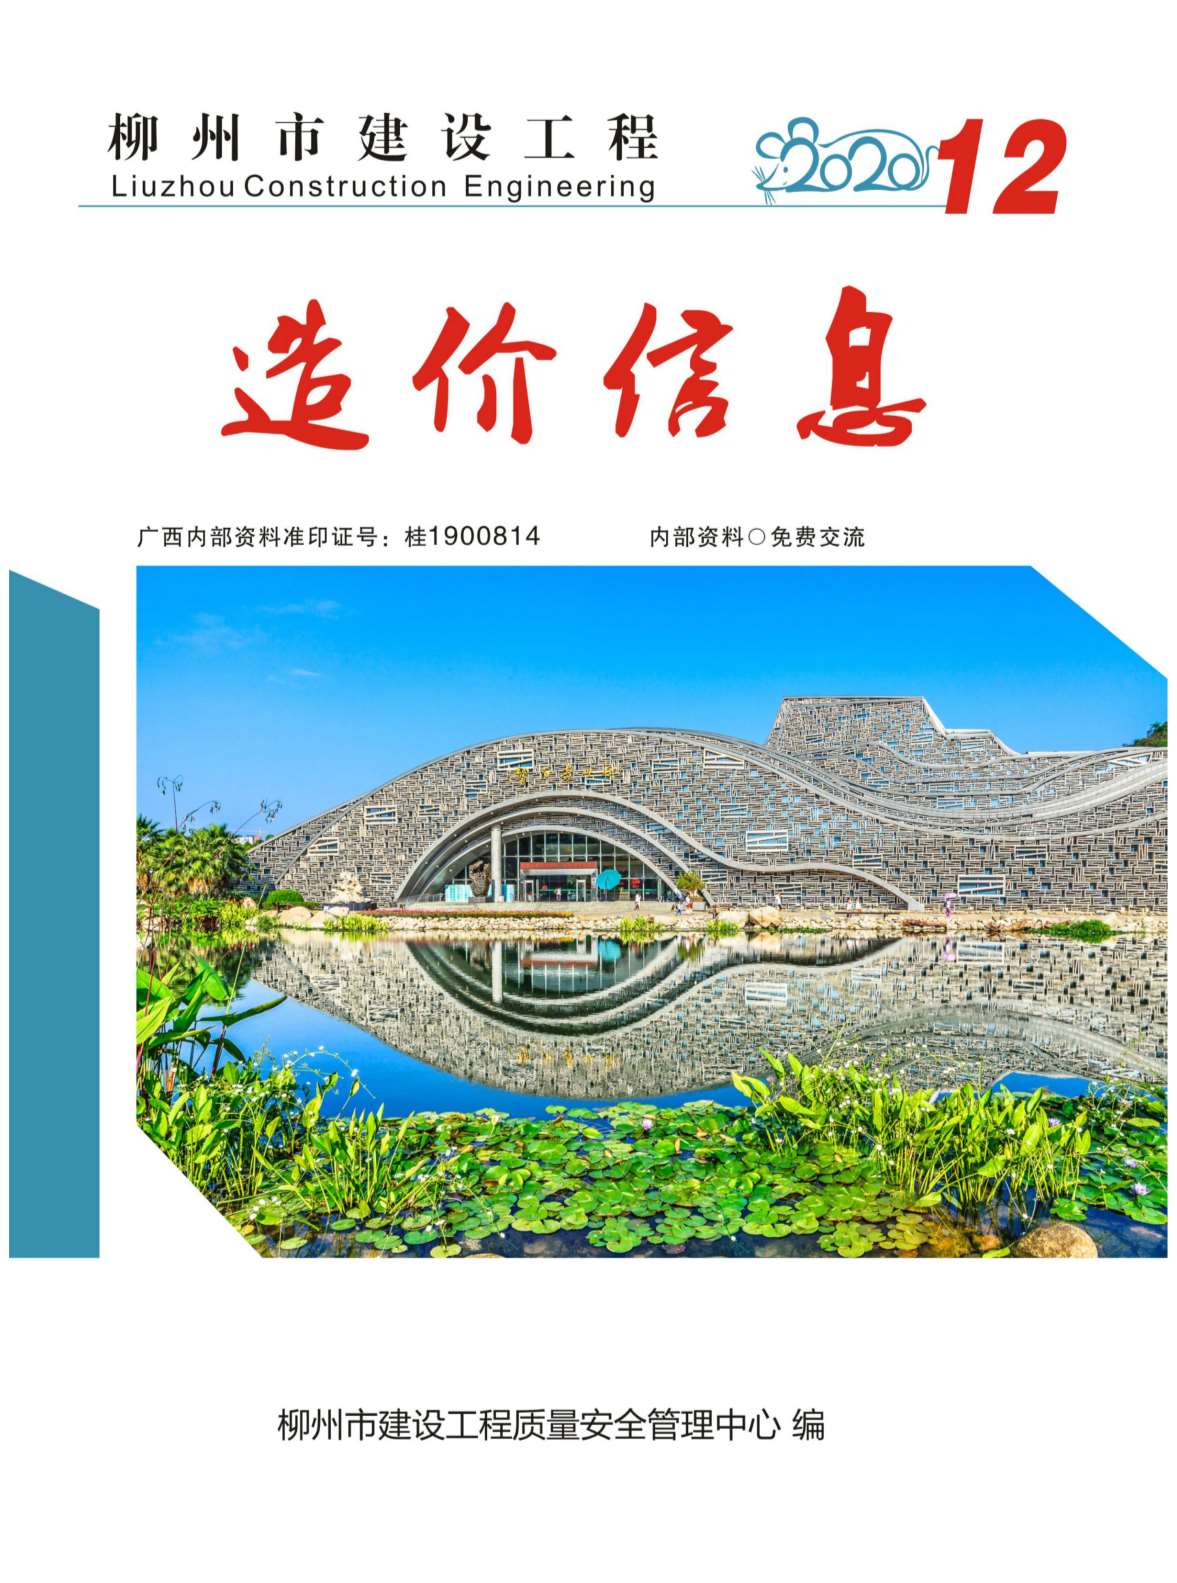 柳州市2020年12月建设工程造价信息造价库信息价